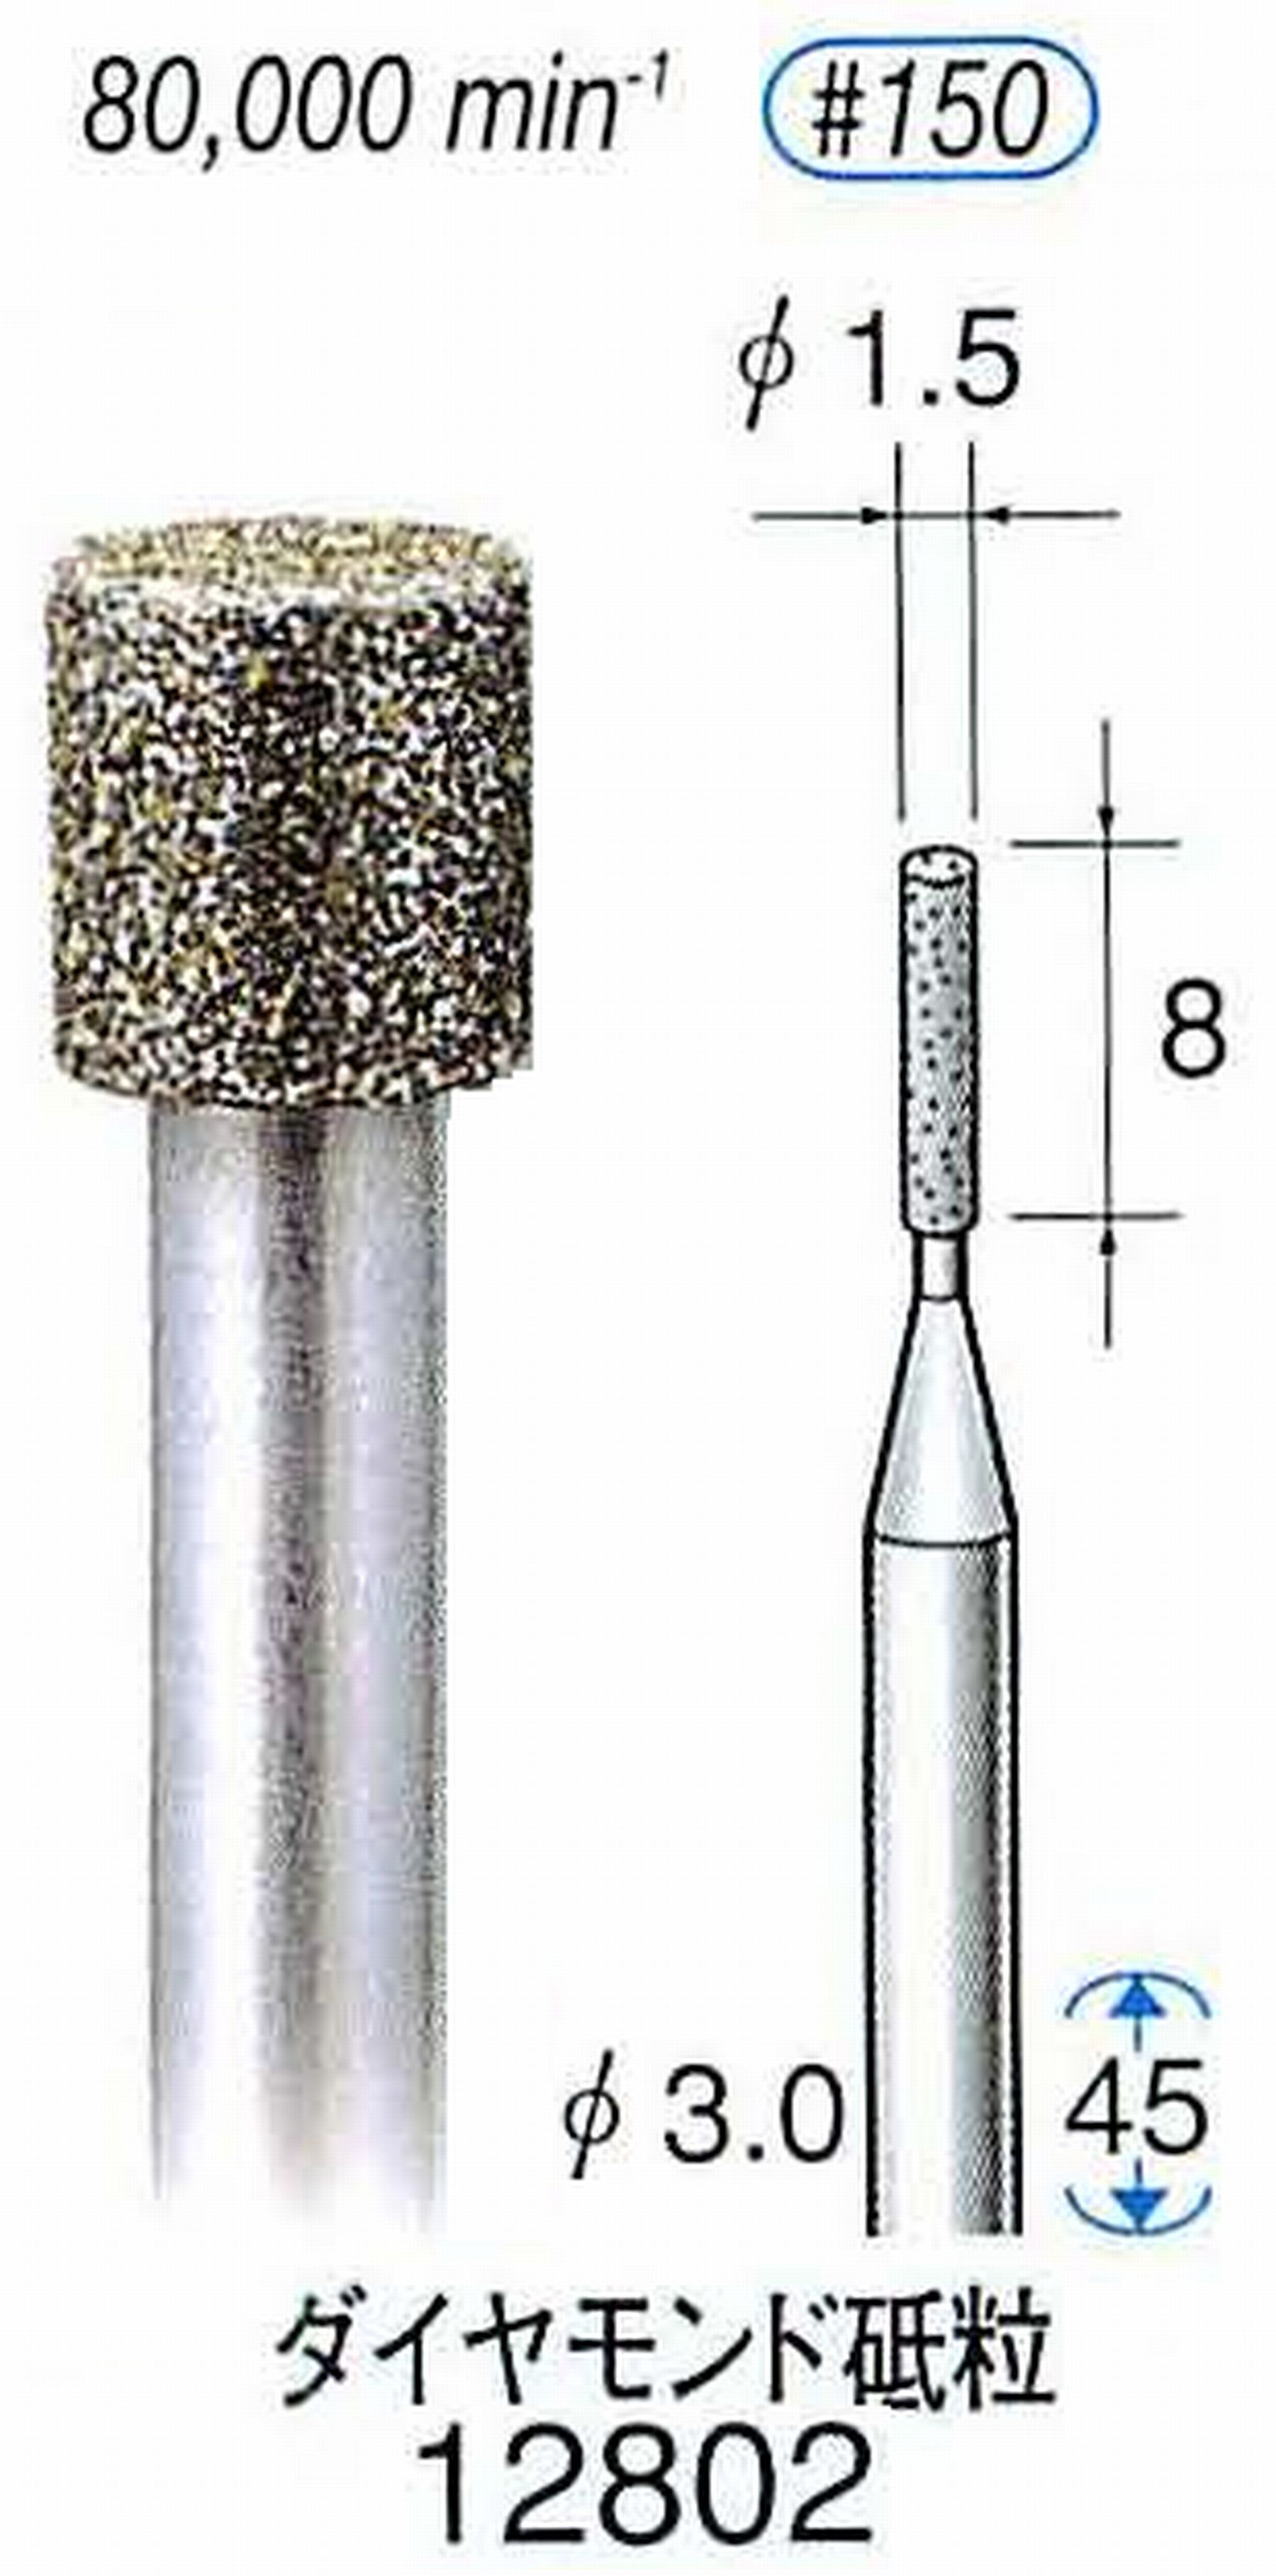 ナカニシ/NAKANISHI クラフト・ホビー用ダイヤモンドバー ダイヤモンド砥粒 軸径(シャンク)φ3.0mm 12802